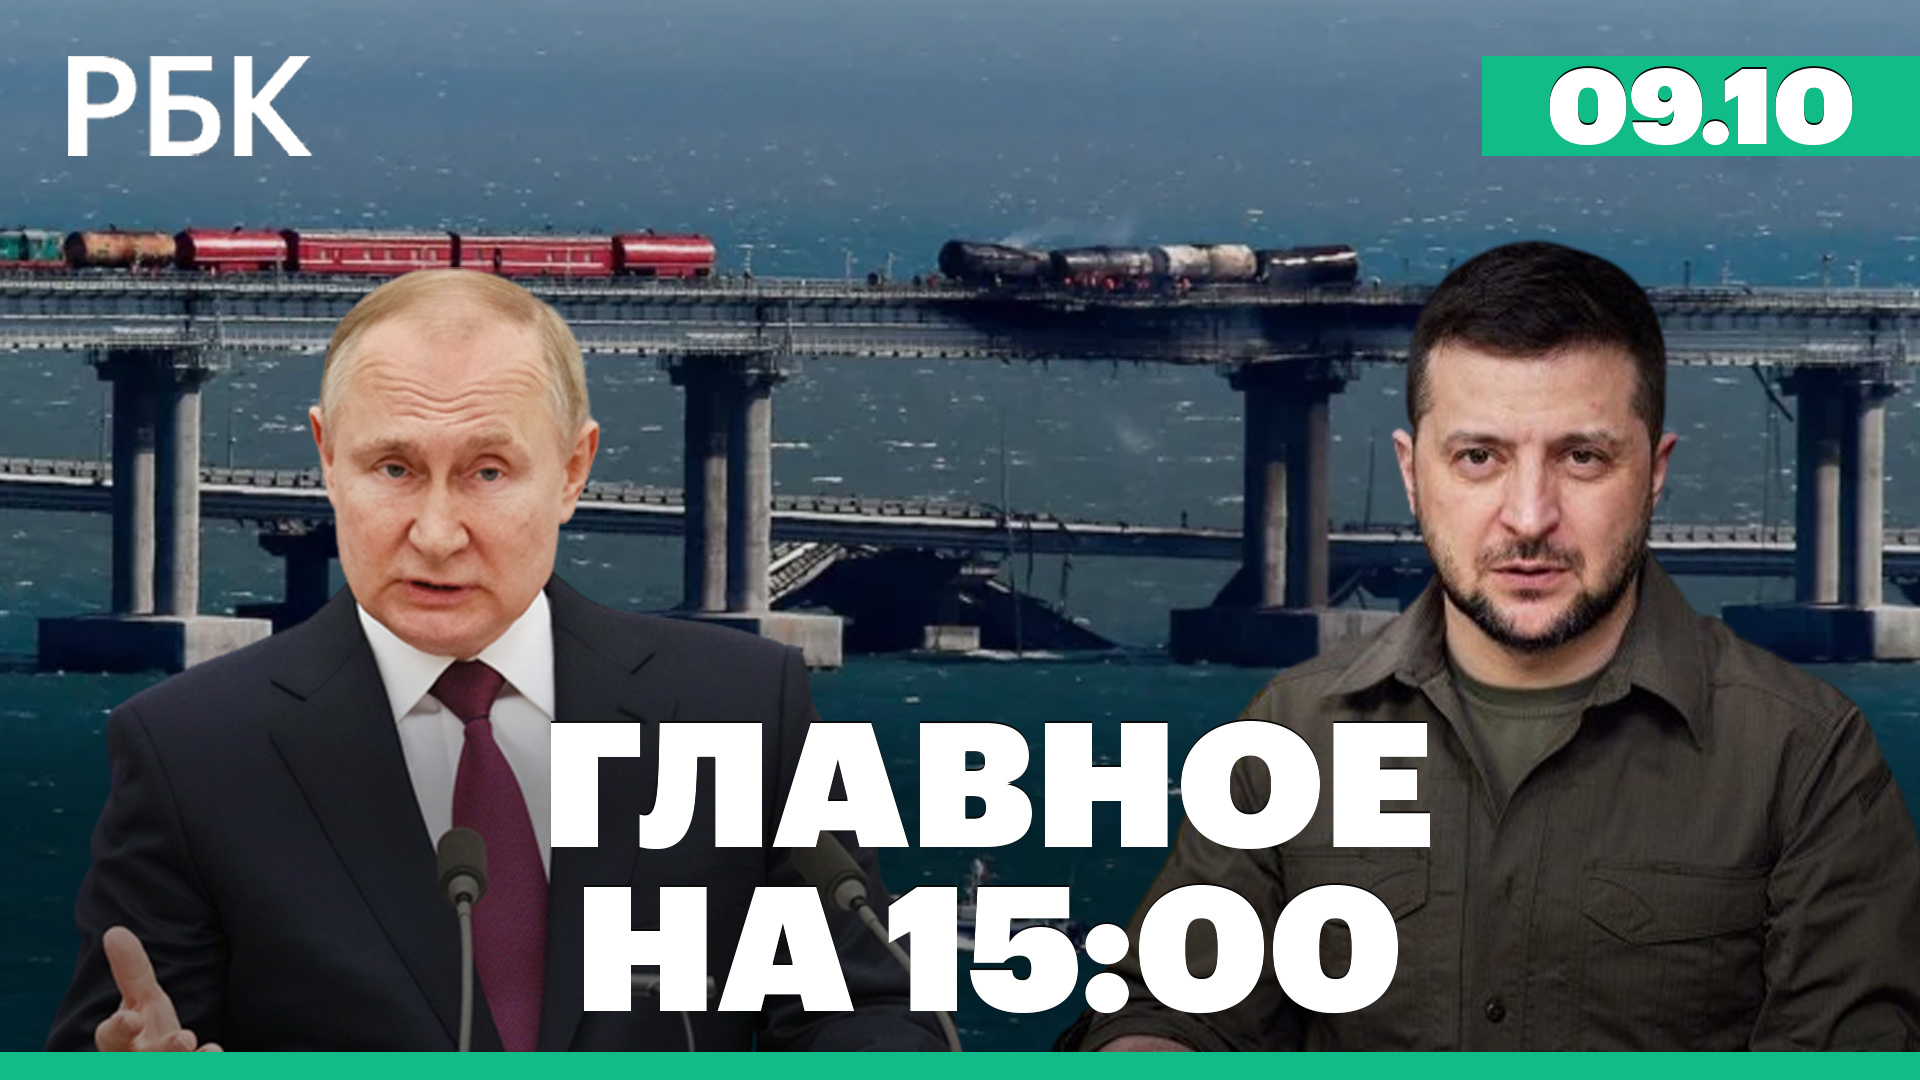 Расследование теракта на Крымском мосту. Восстановление движения. Падение ВВП Украины на треть